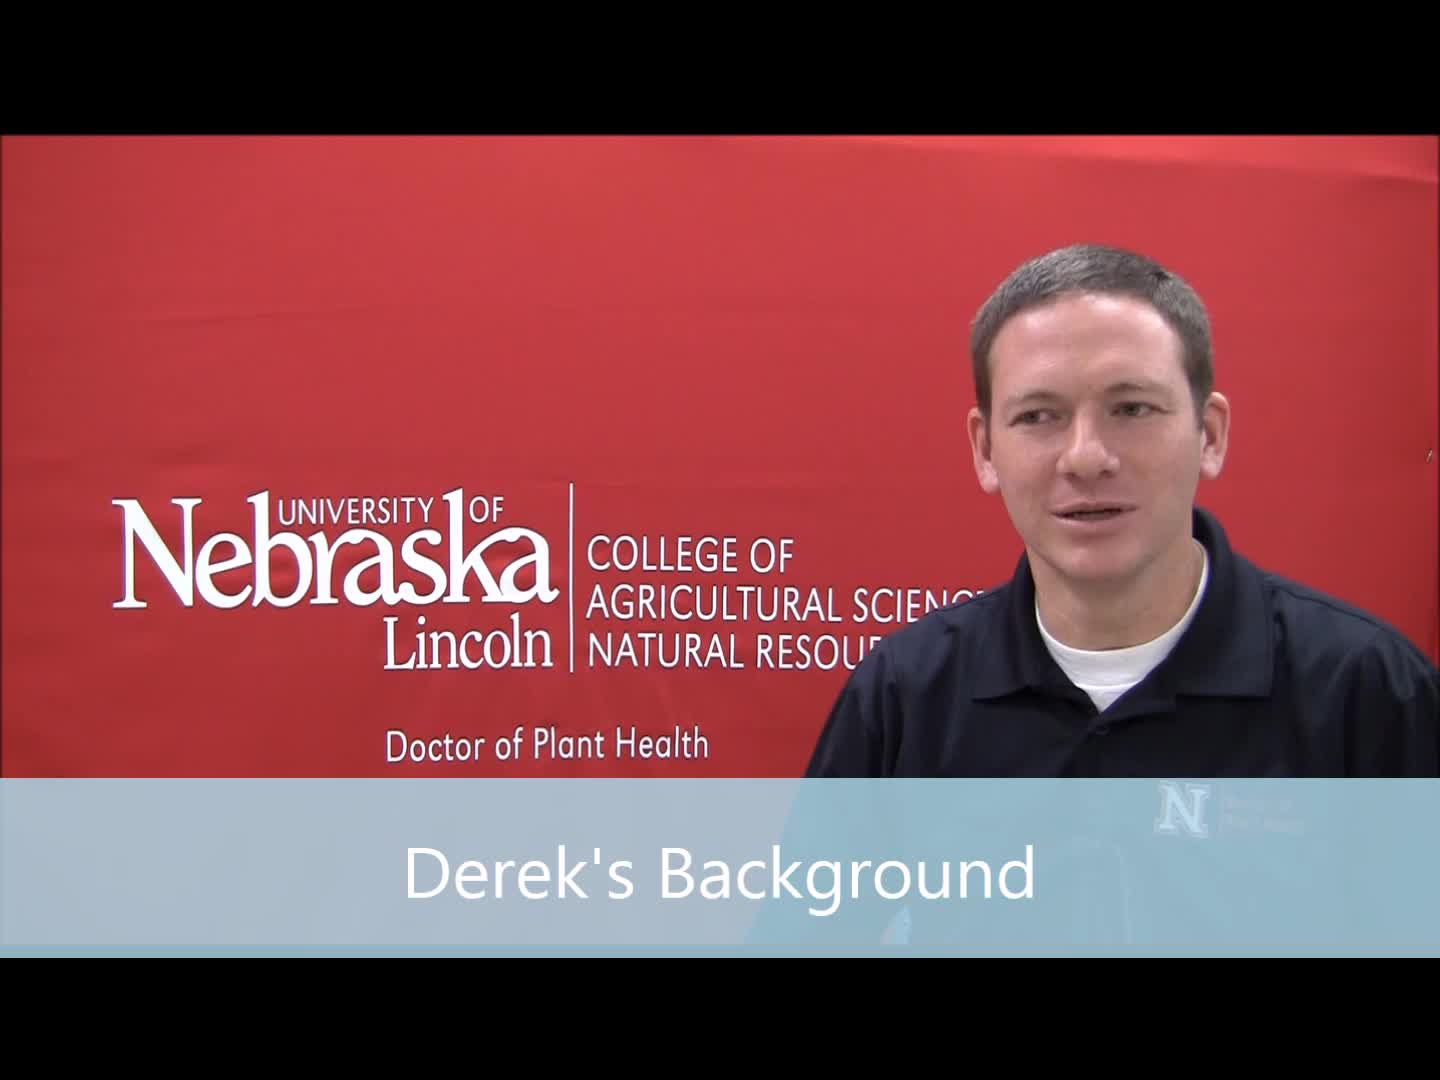 Derek Pruitt, DPH graduate student